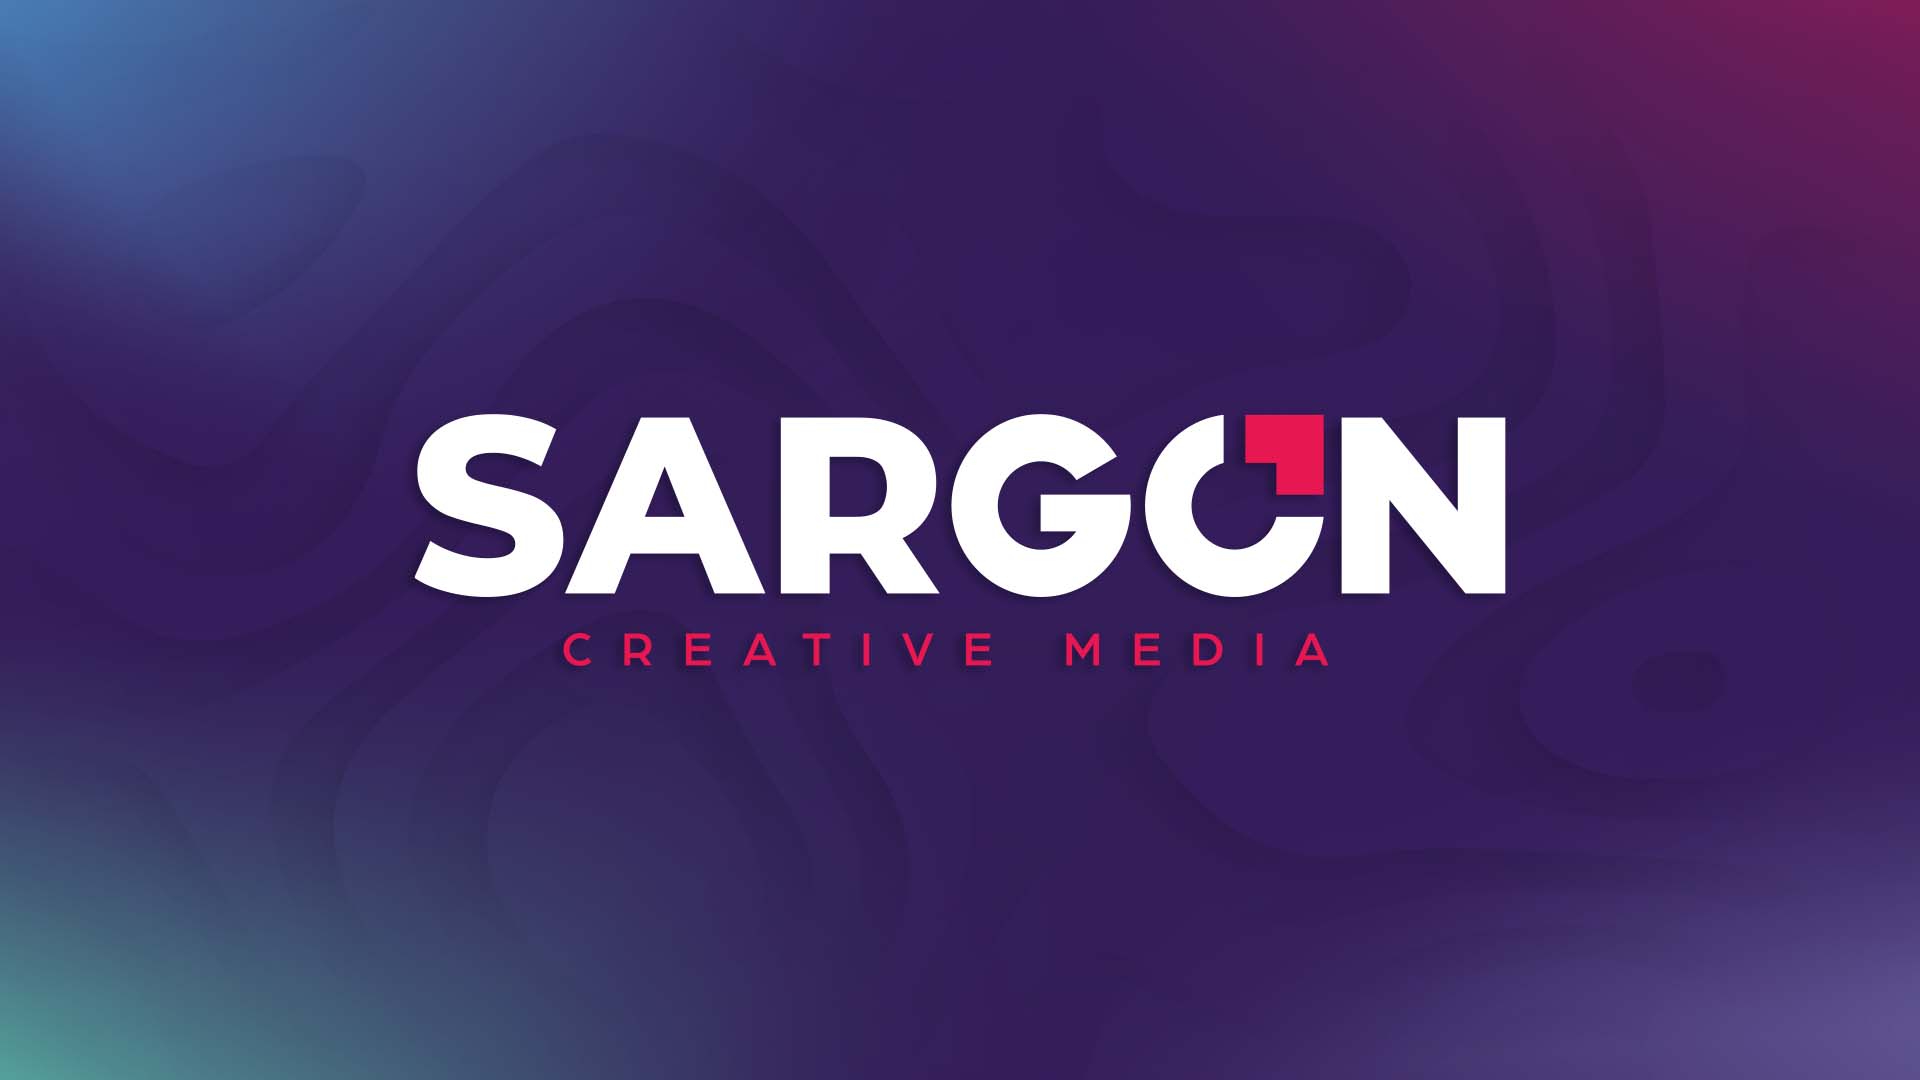 (c) Sargon.media